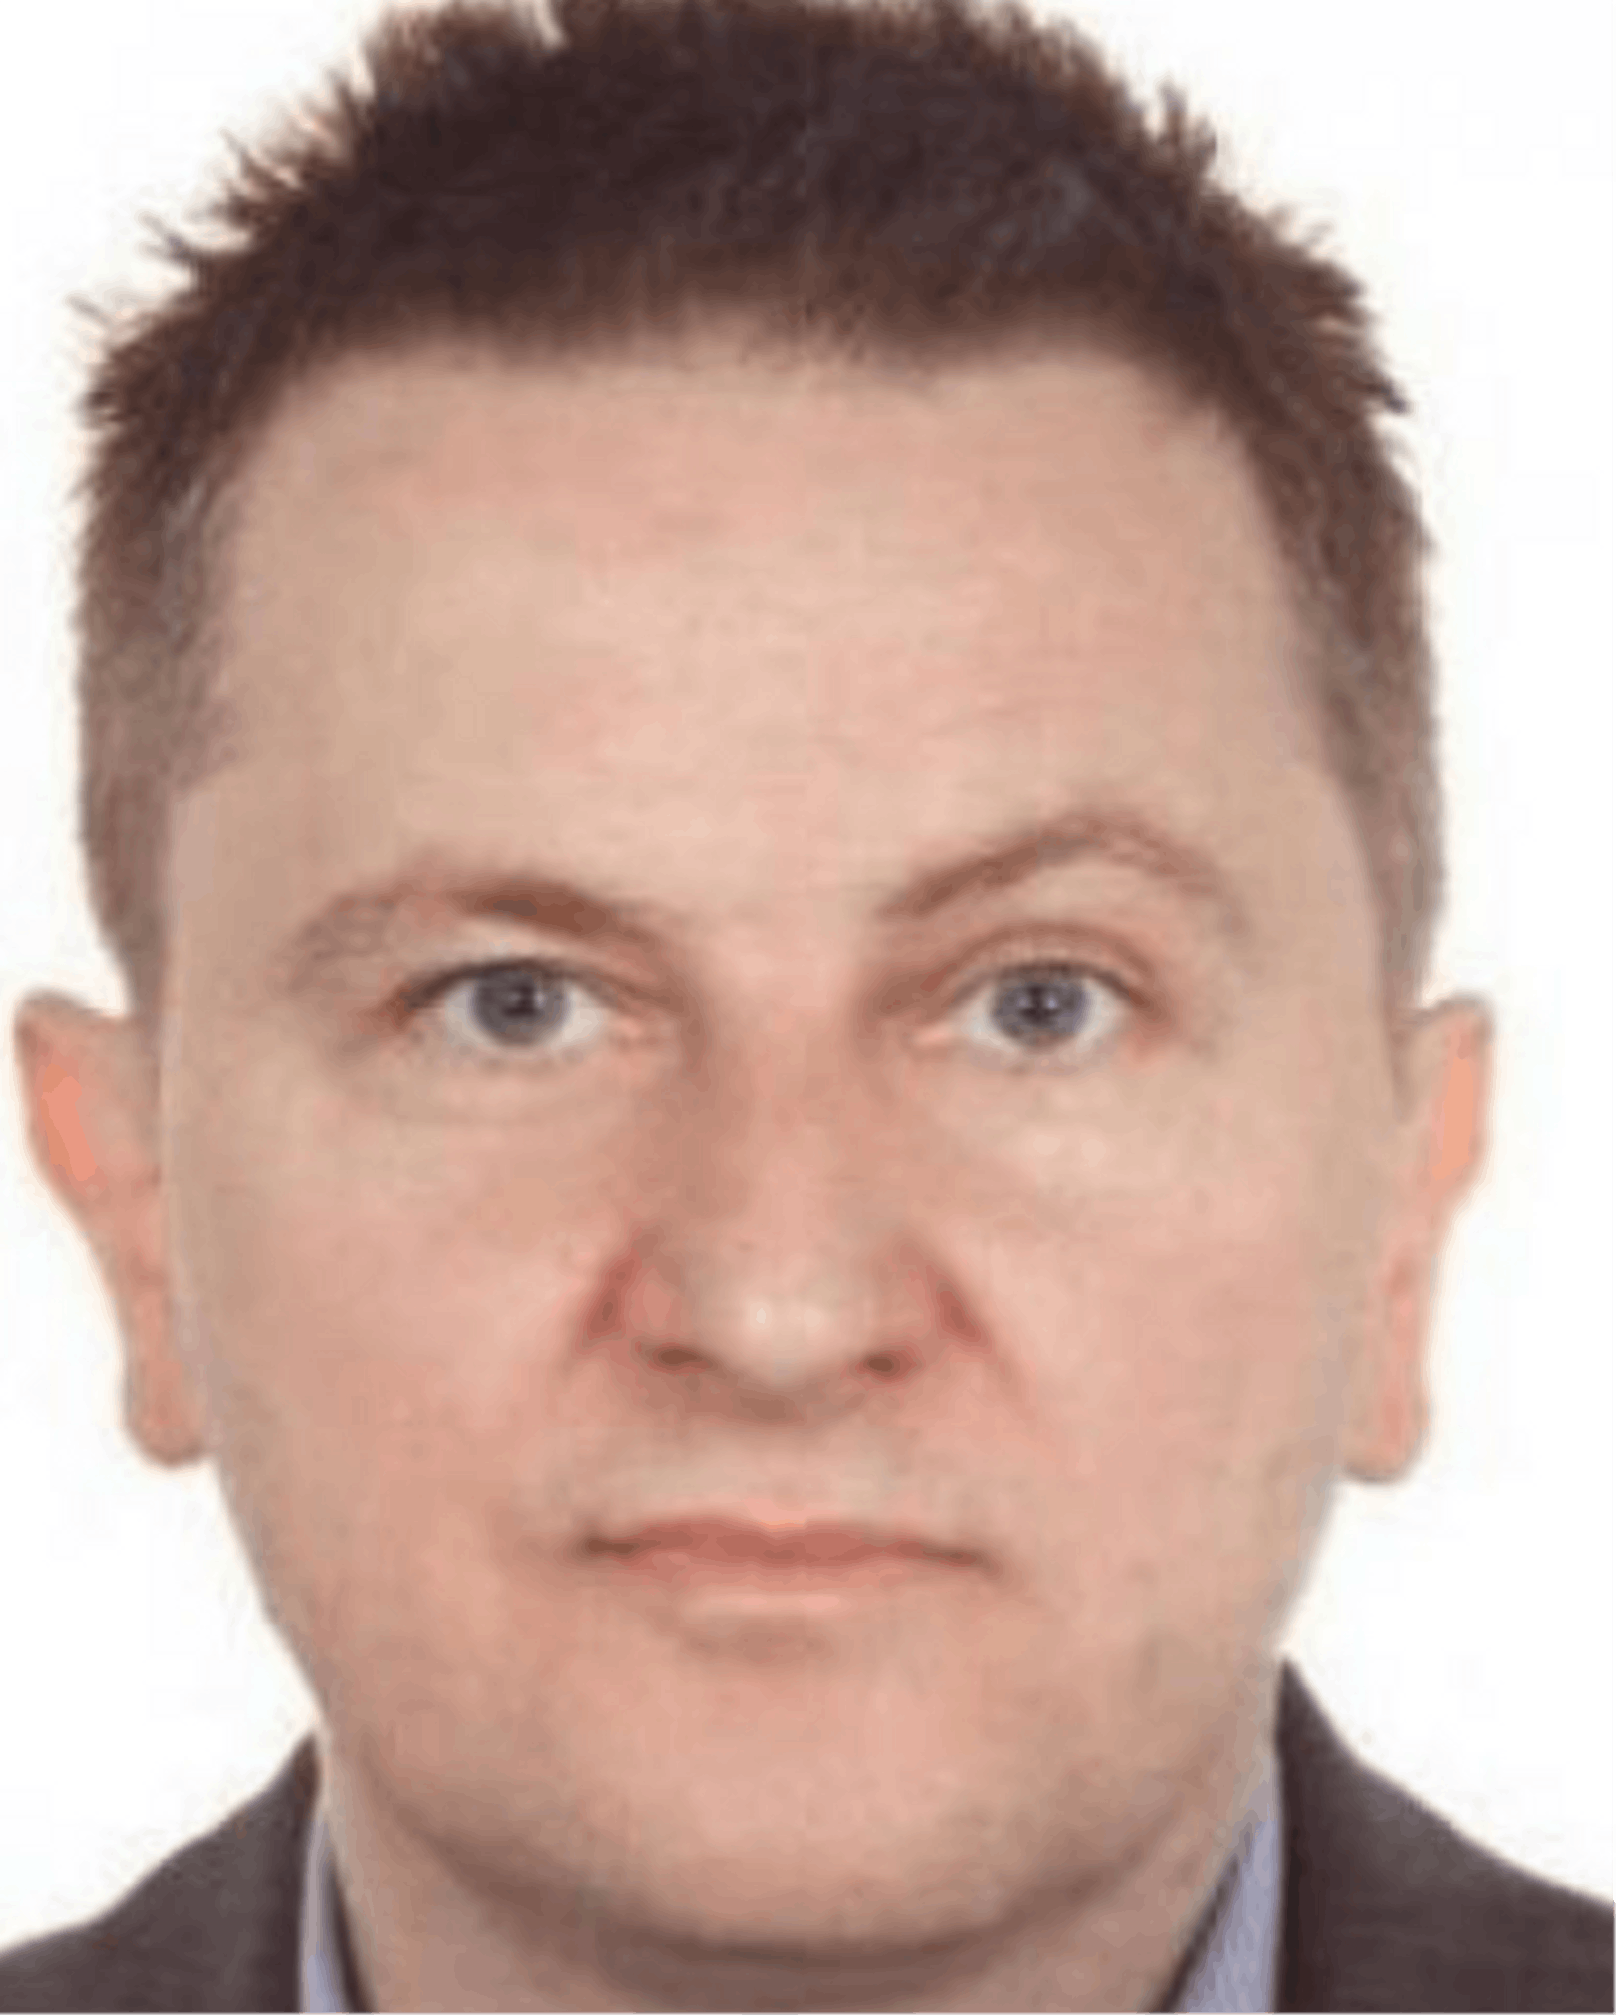 Dariusz Ziolkowski wird wegen sexueller Ausbeutung von Kindern und wegen Kinderpornografie gesucht. Der Pole wurde zu vier Jahren Haft verurteilt.